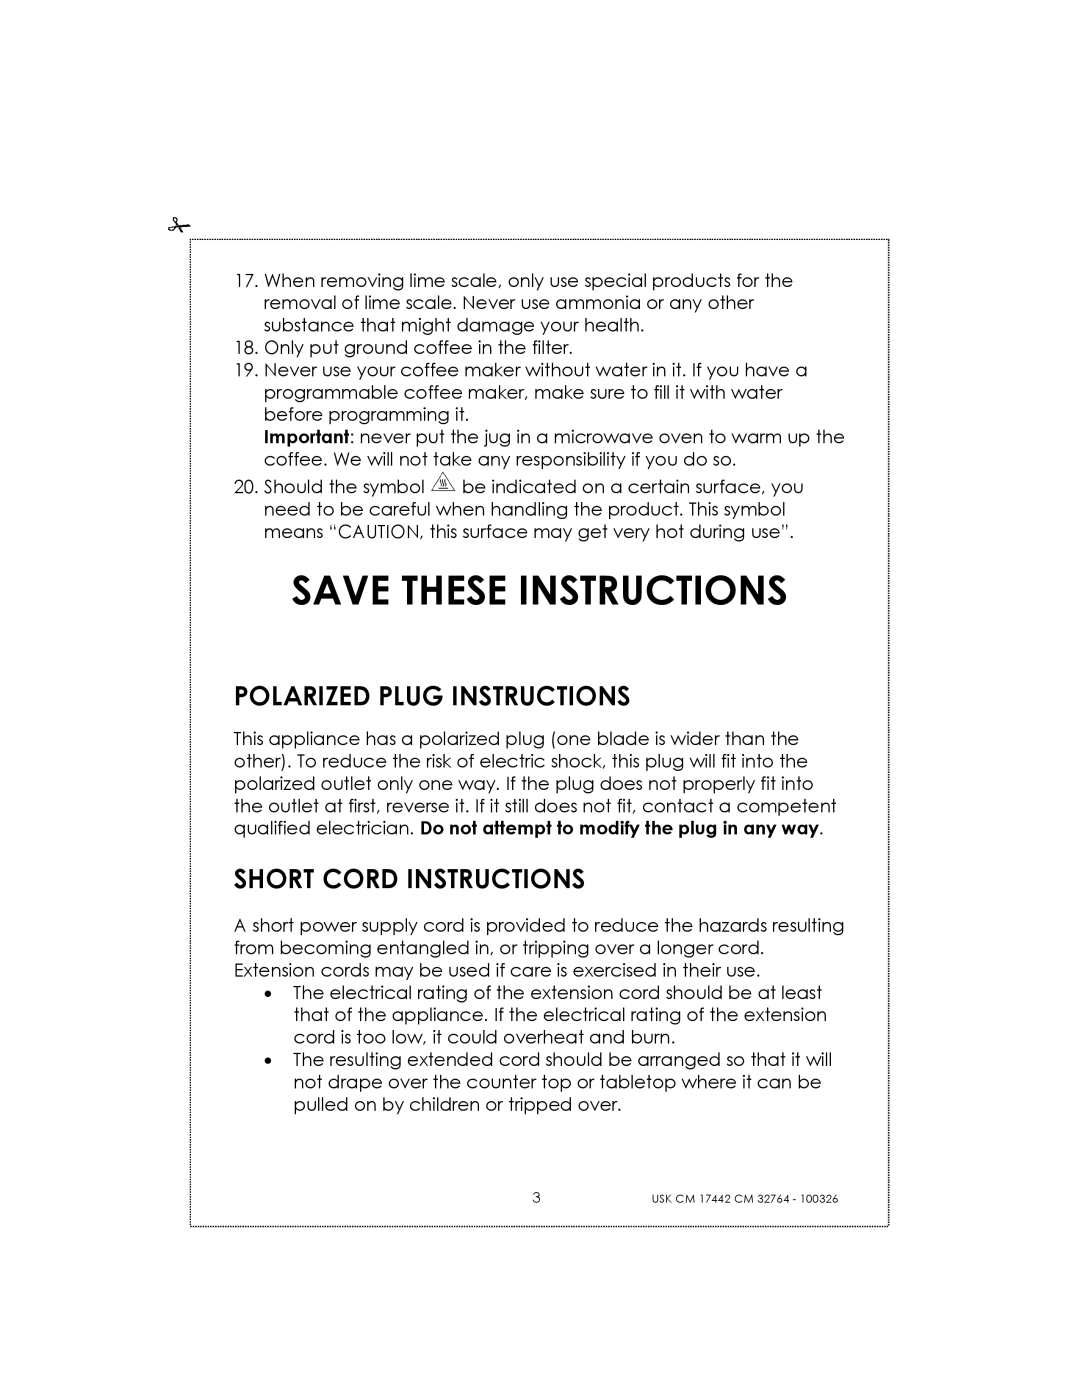 Kalorik USK CM 32764, USK CM 17442 manual Save These Instructions, Polarized Plug Instructions, Short Cord Instructions 